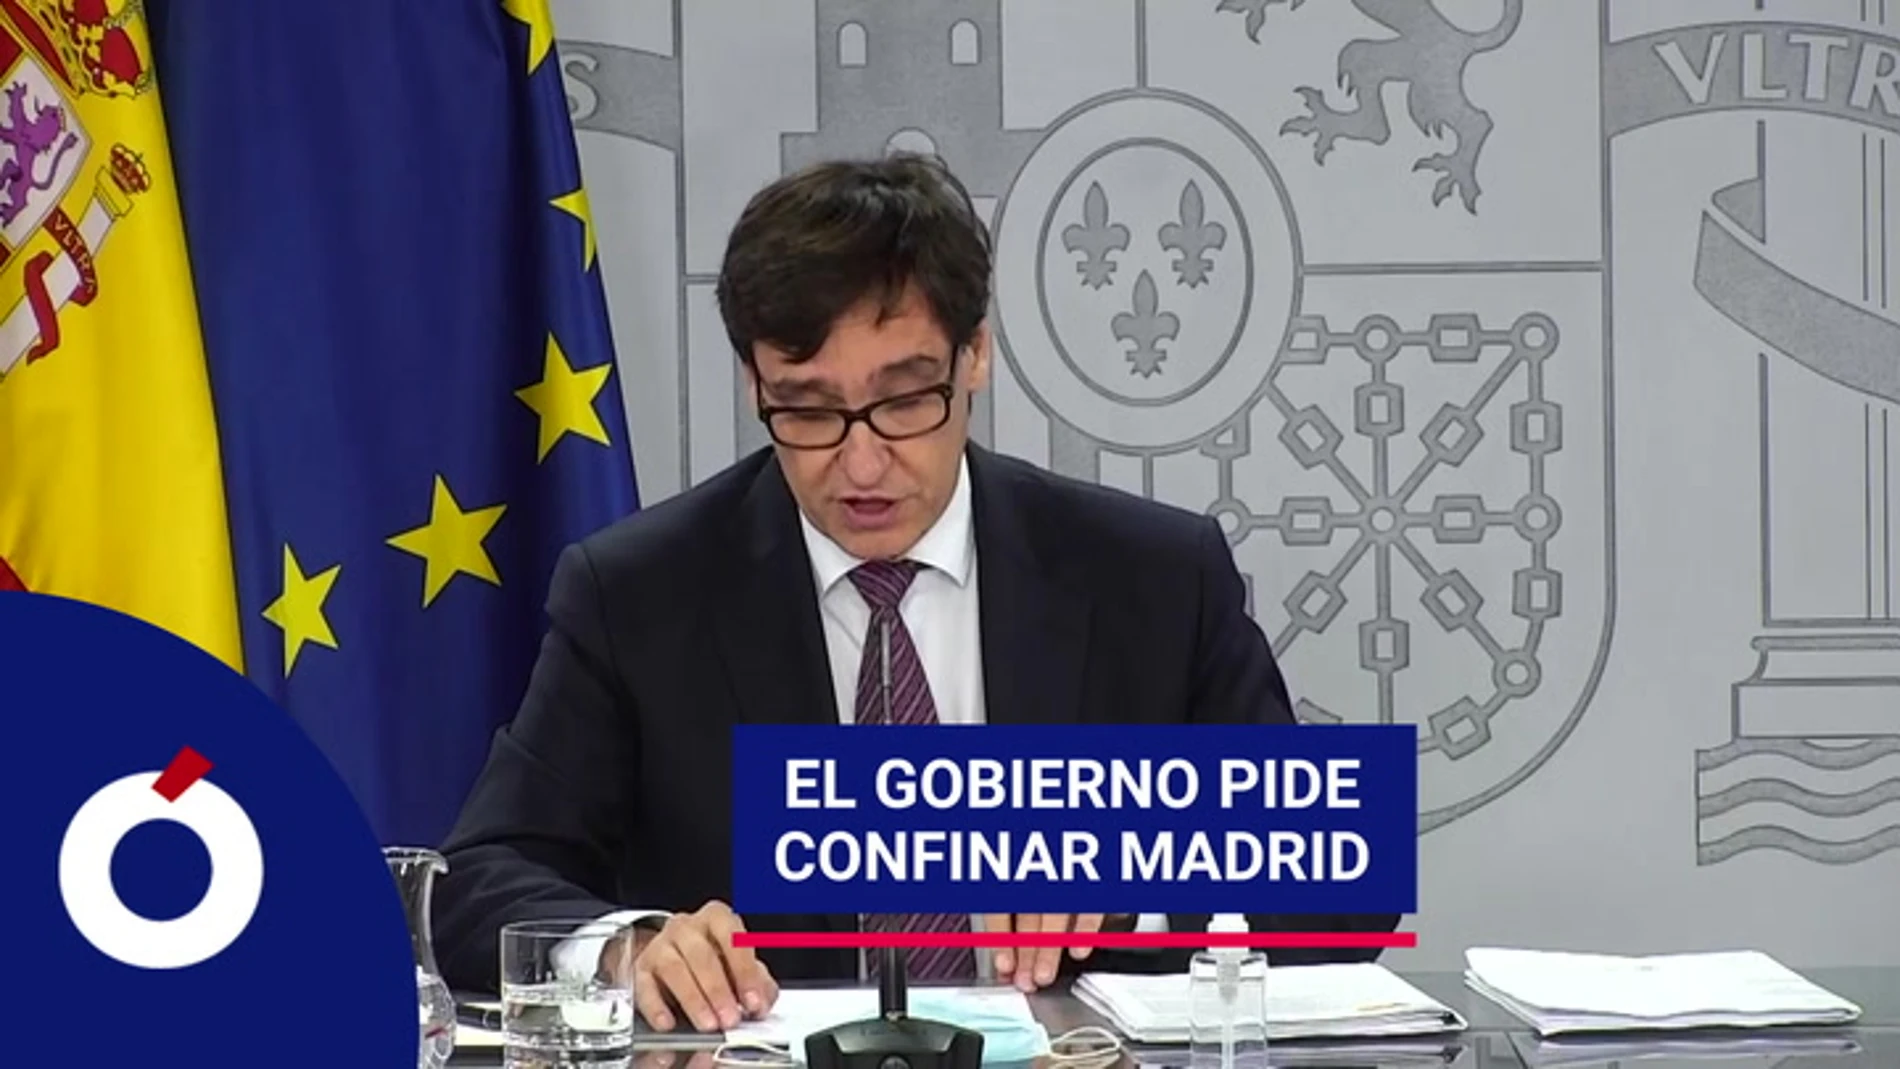 El Gobierno pide confinar Madrid